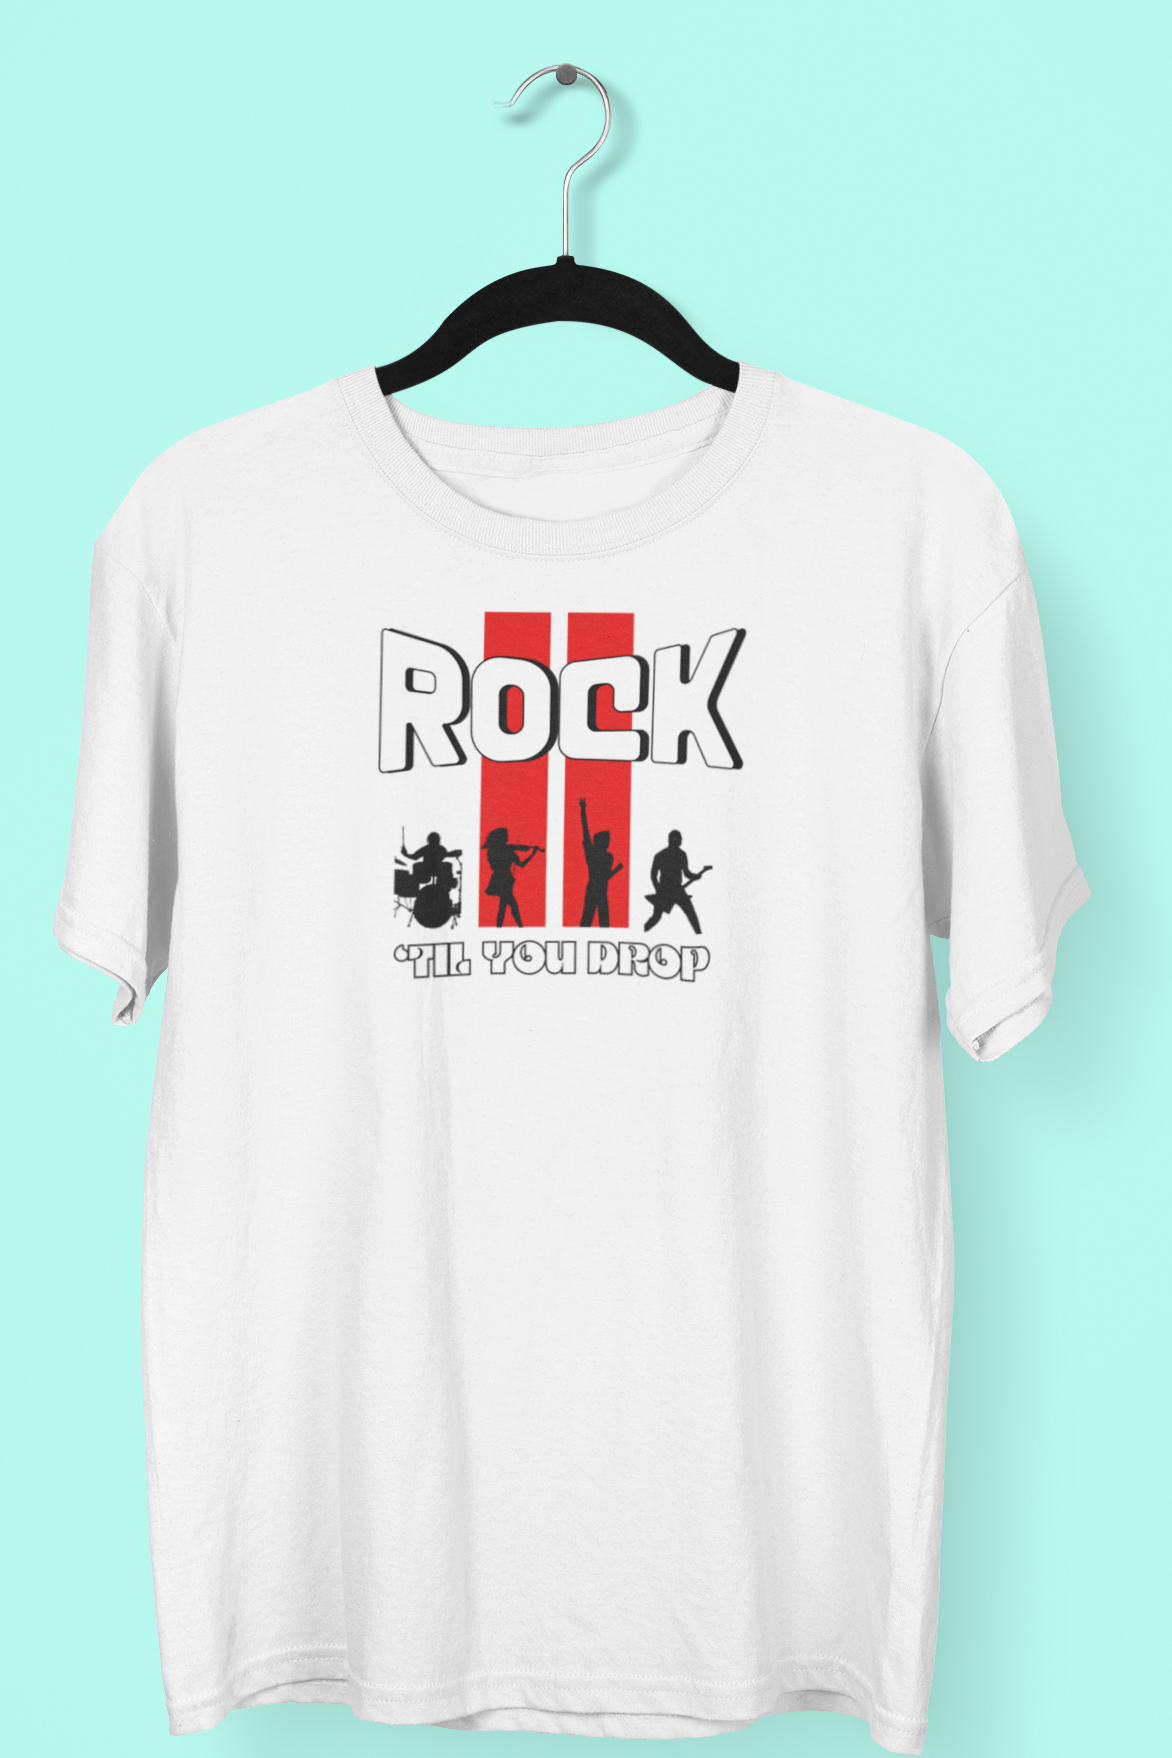 Rock til you drop - Premium Cotton T-shirt Unisex